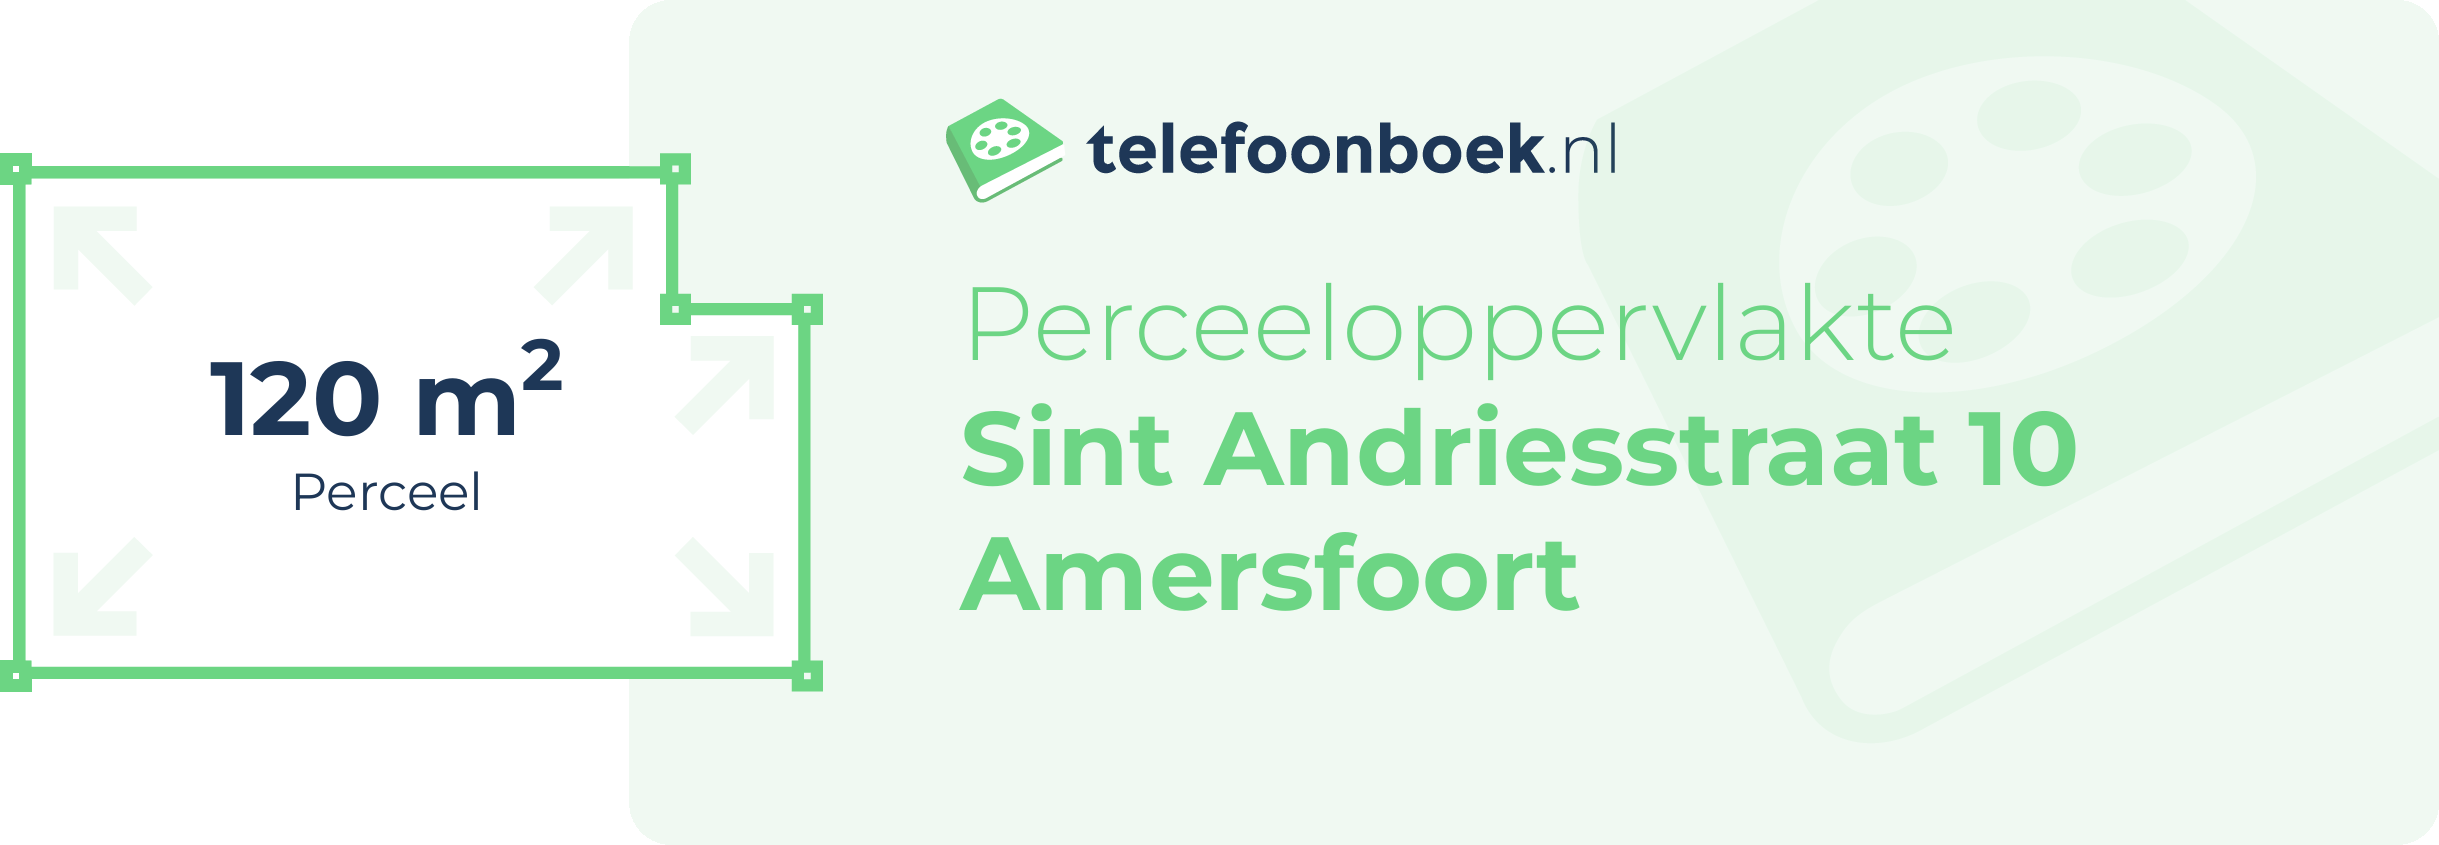 Perceeloppervlakte Sint Andriesstraat 10 Amersfoort